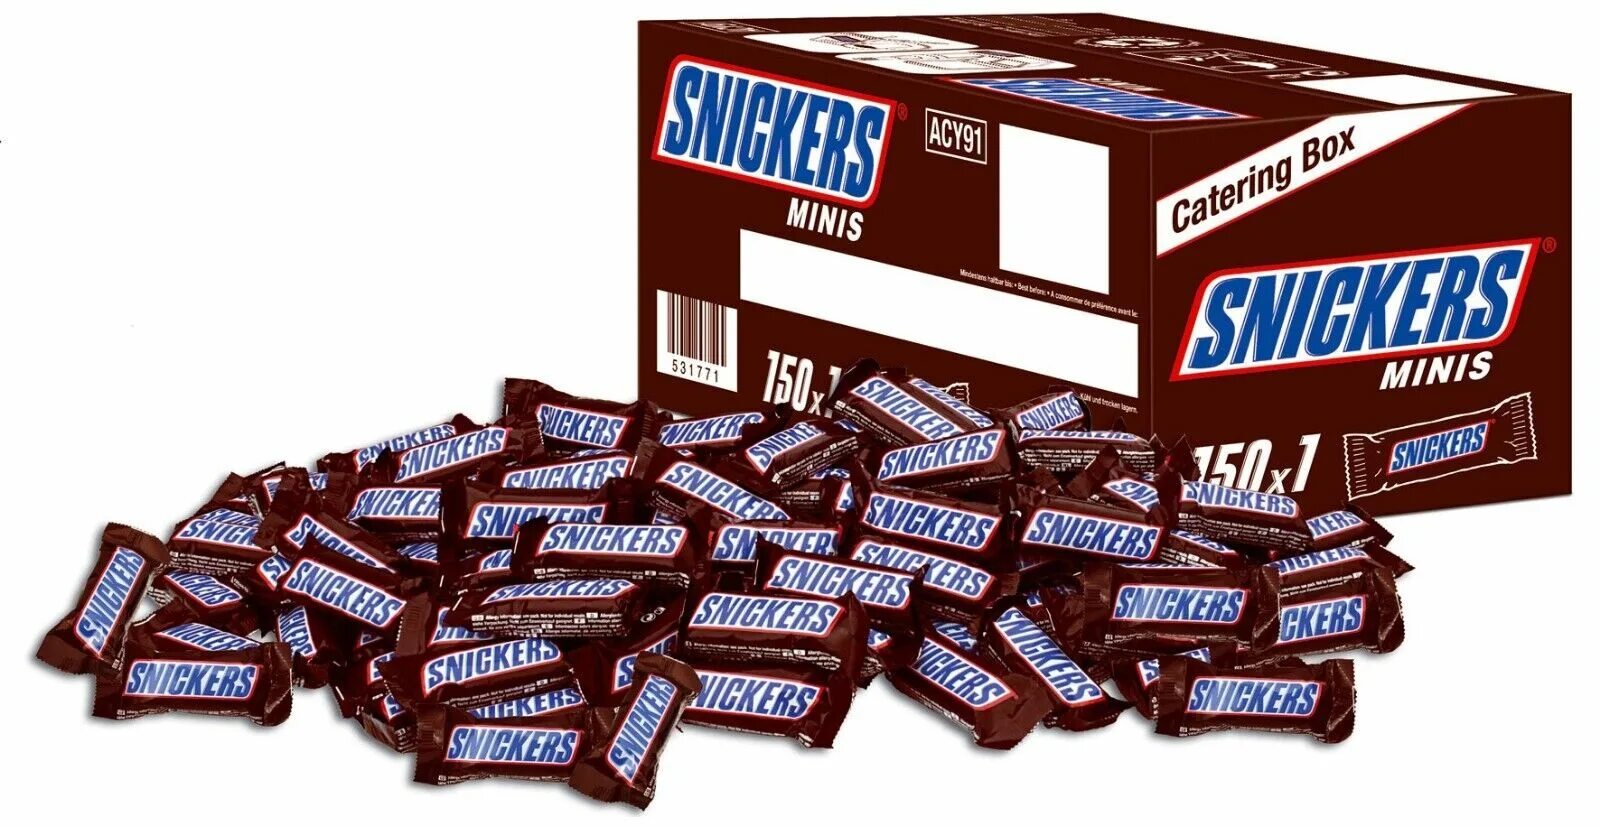 Шоколадные конфеты snickers Minis. Сникерс Минис вес 1 конфеты. Конфеты шоколадные Марс Сникерс. Snickers Minis, 1 кг.